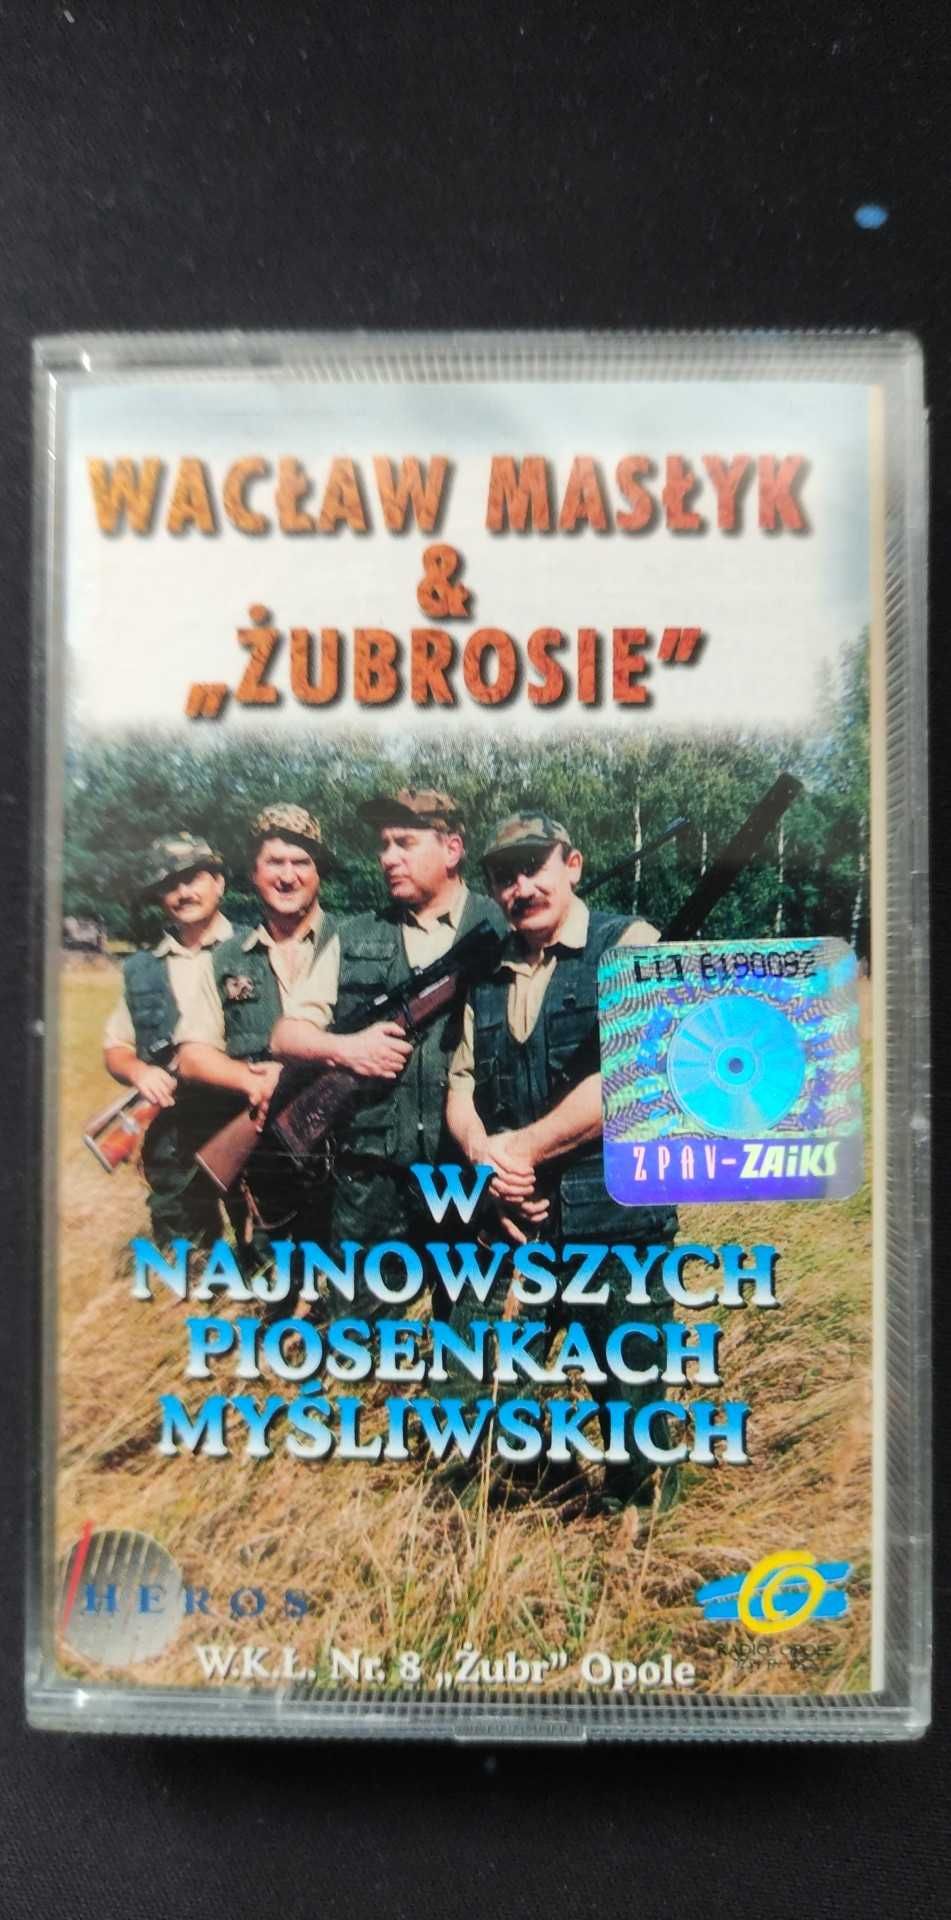 Wacław Masłyk & "Żubrosie" - kaseta magnetofonowa